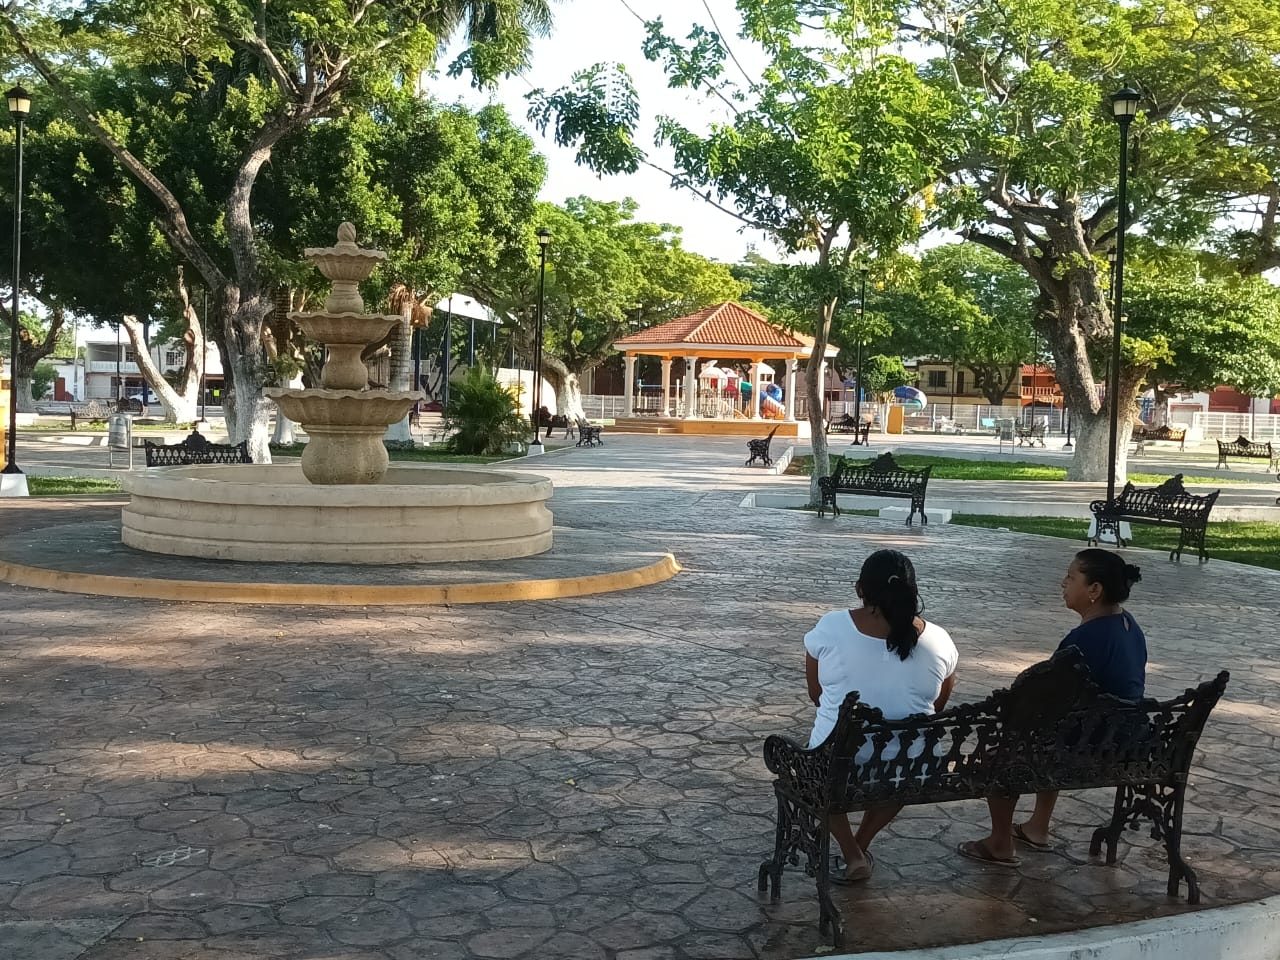 El parque más grande de Yucatán se encuentra a solo una hora de Mérida